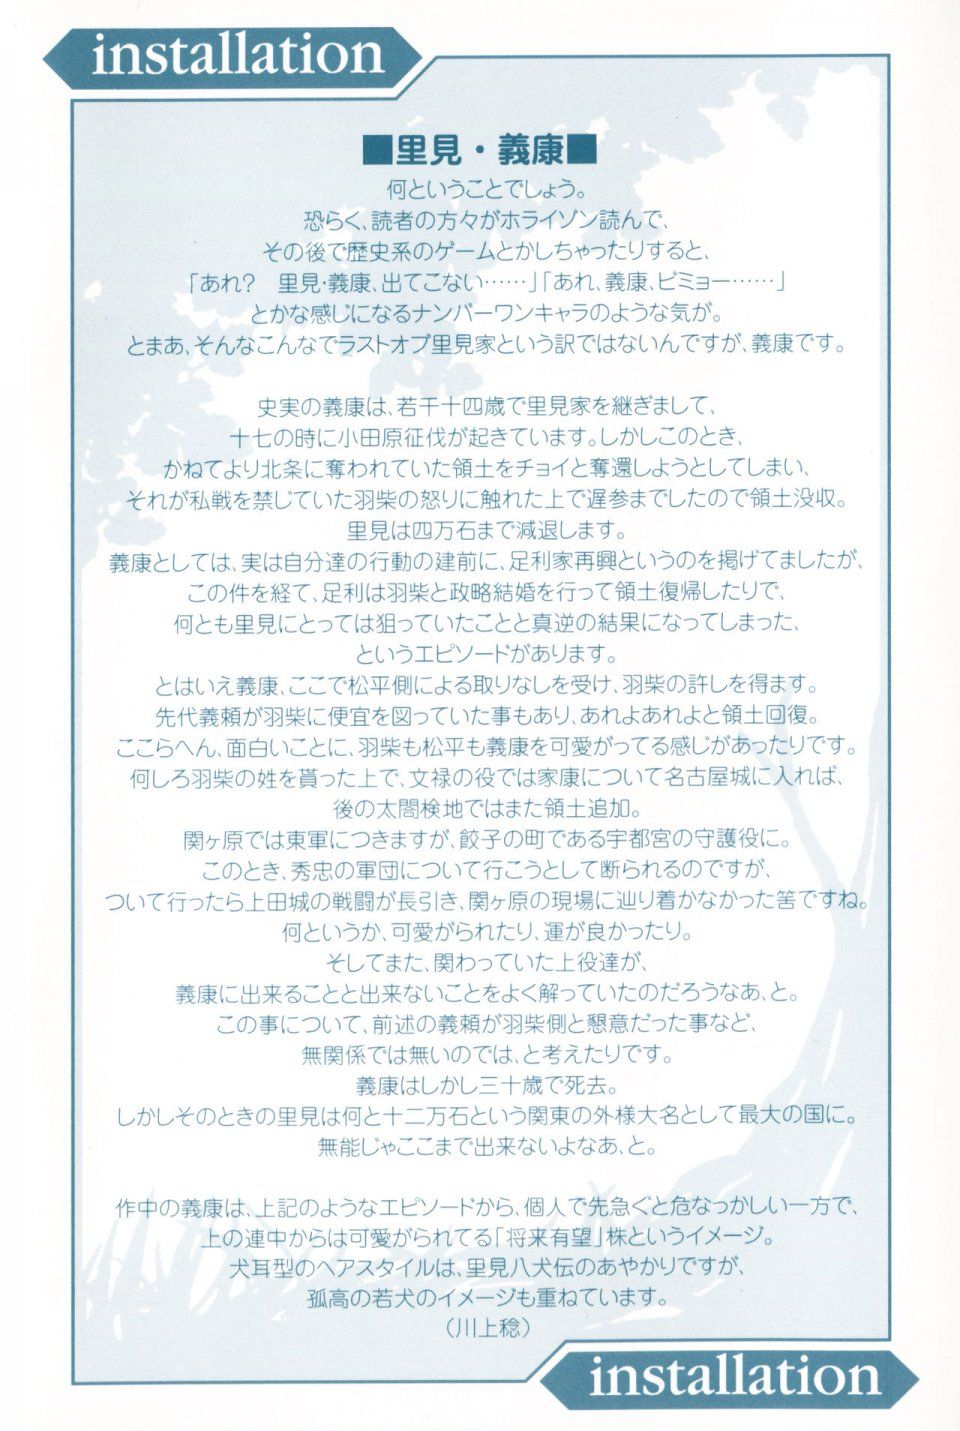 Kyoukai Senjou no Horizon LN Vol 16(7A) - Photo #4